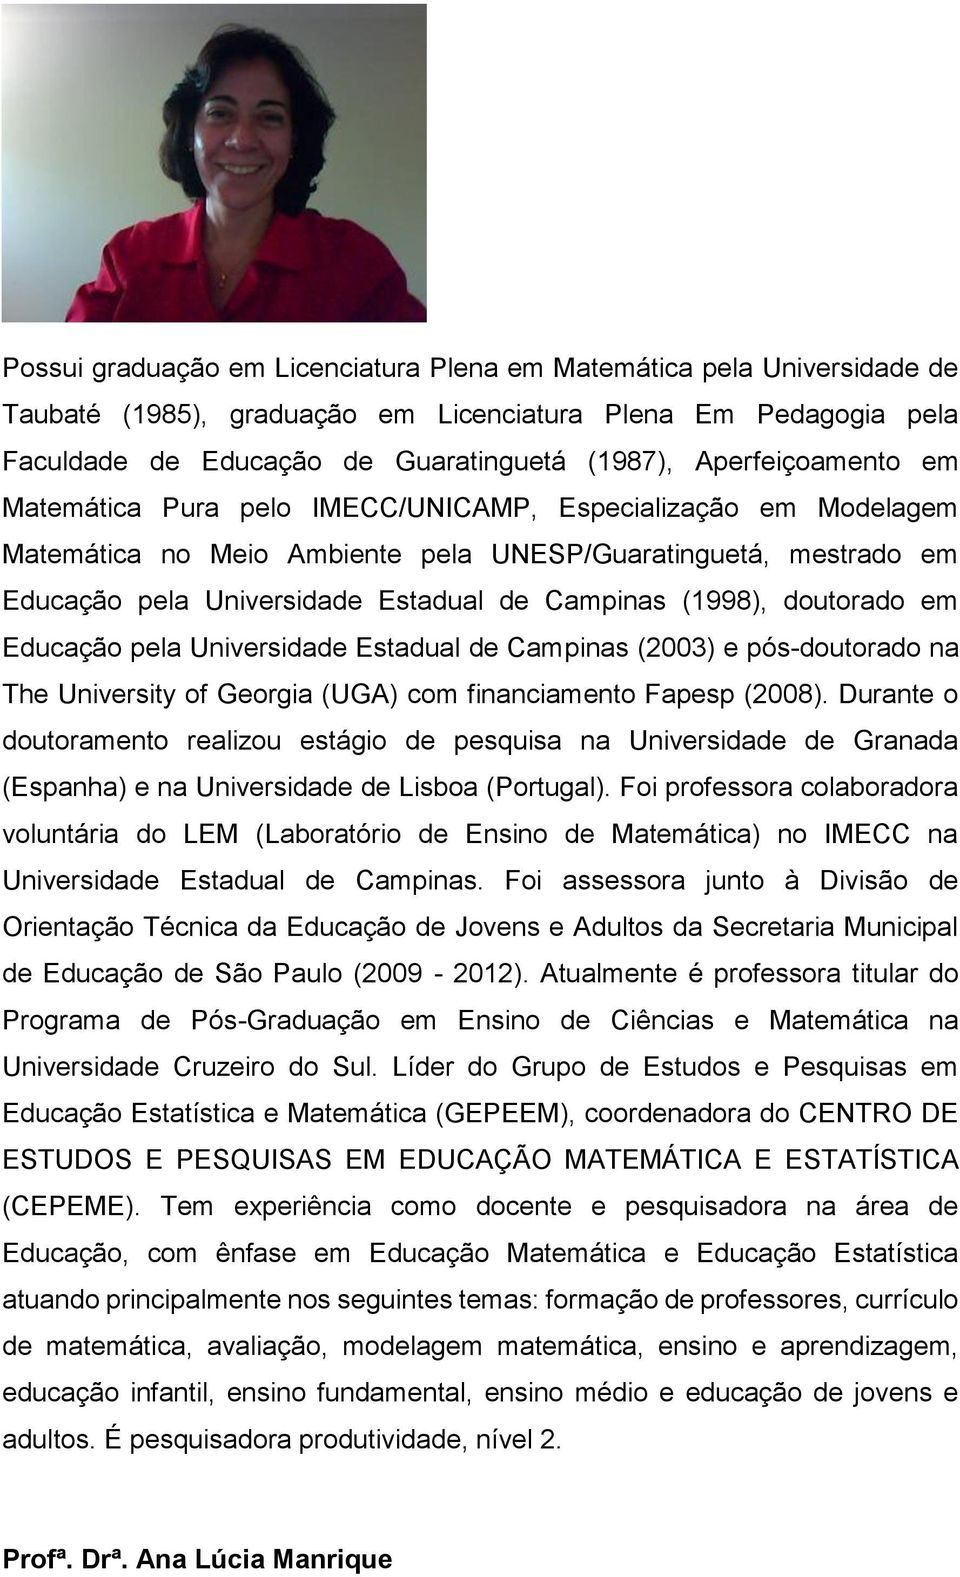 (1998), doutorado em Educação pela Universidade Estadual de Campinas (2003) e pós-doutorado na The University of Georgia (UGA) com financiamento Fapesp (2008).